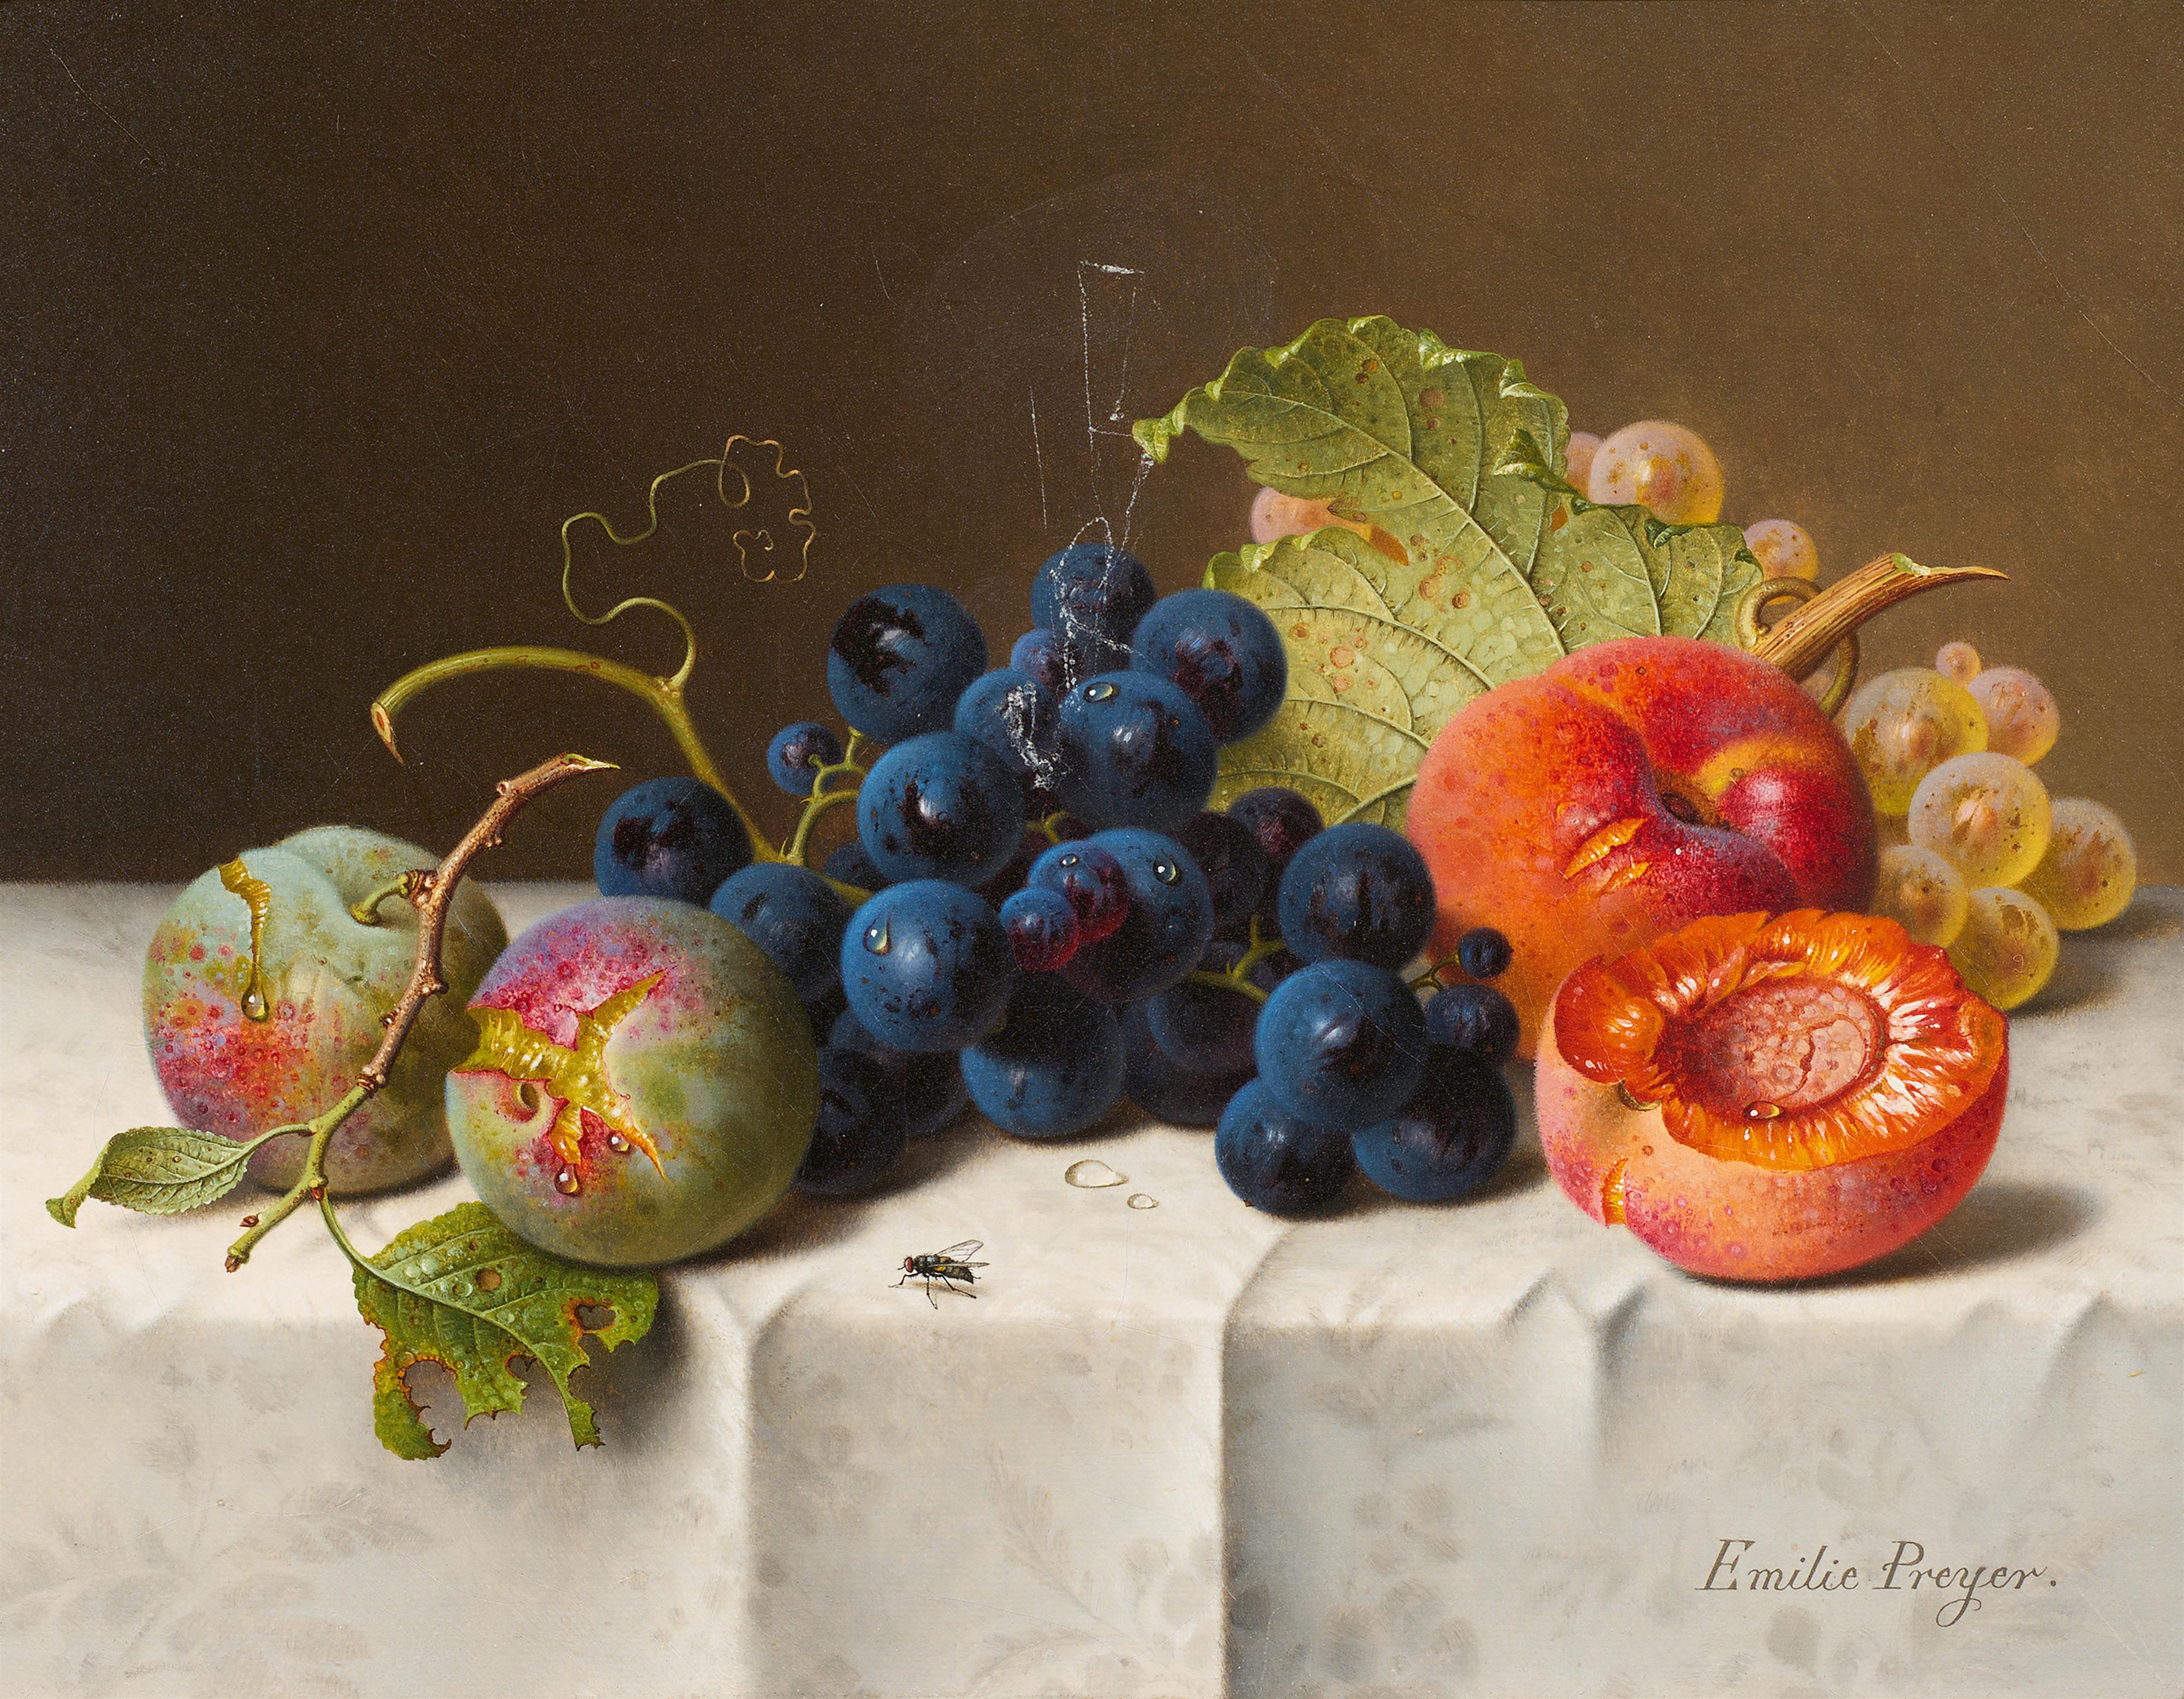 Emilie Preyer - Stillleben mit Pflaumen, Trauben und Pfirsichen auf weißer Tischdecke